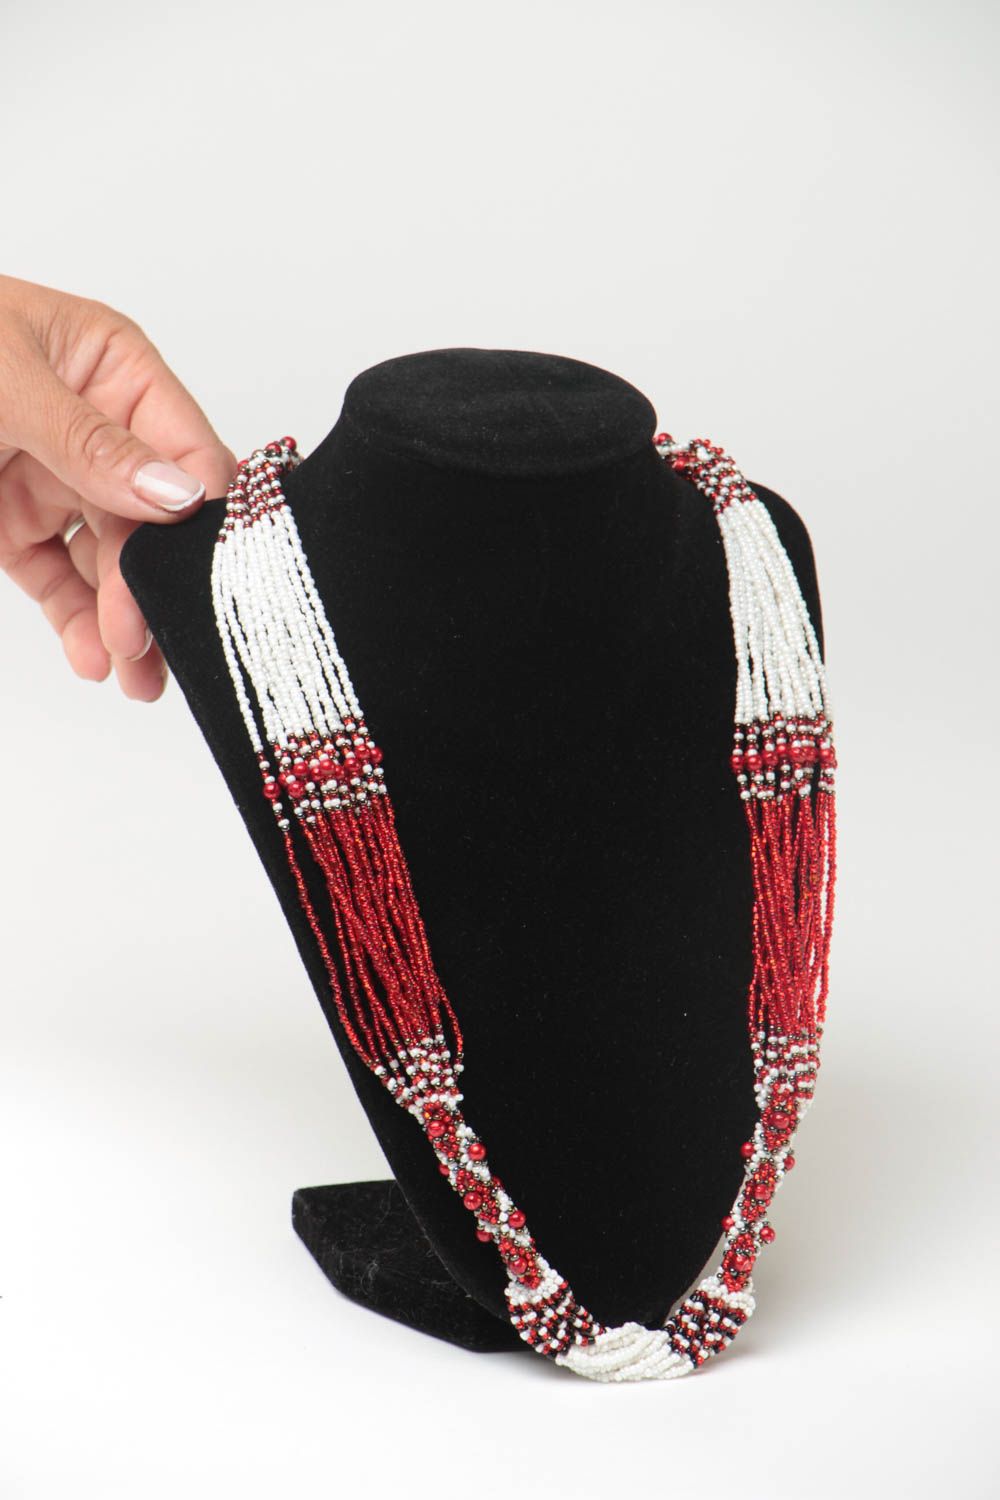 Ожерелье из бисера длинное красное с белым стильное этническое ручной работы фото 5